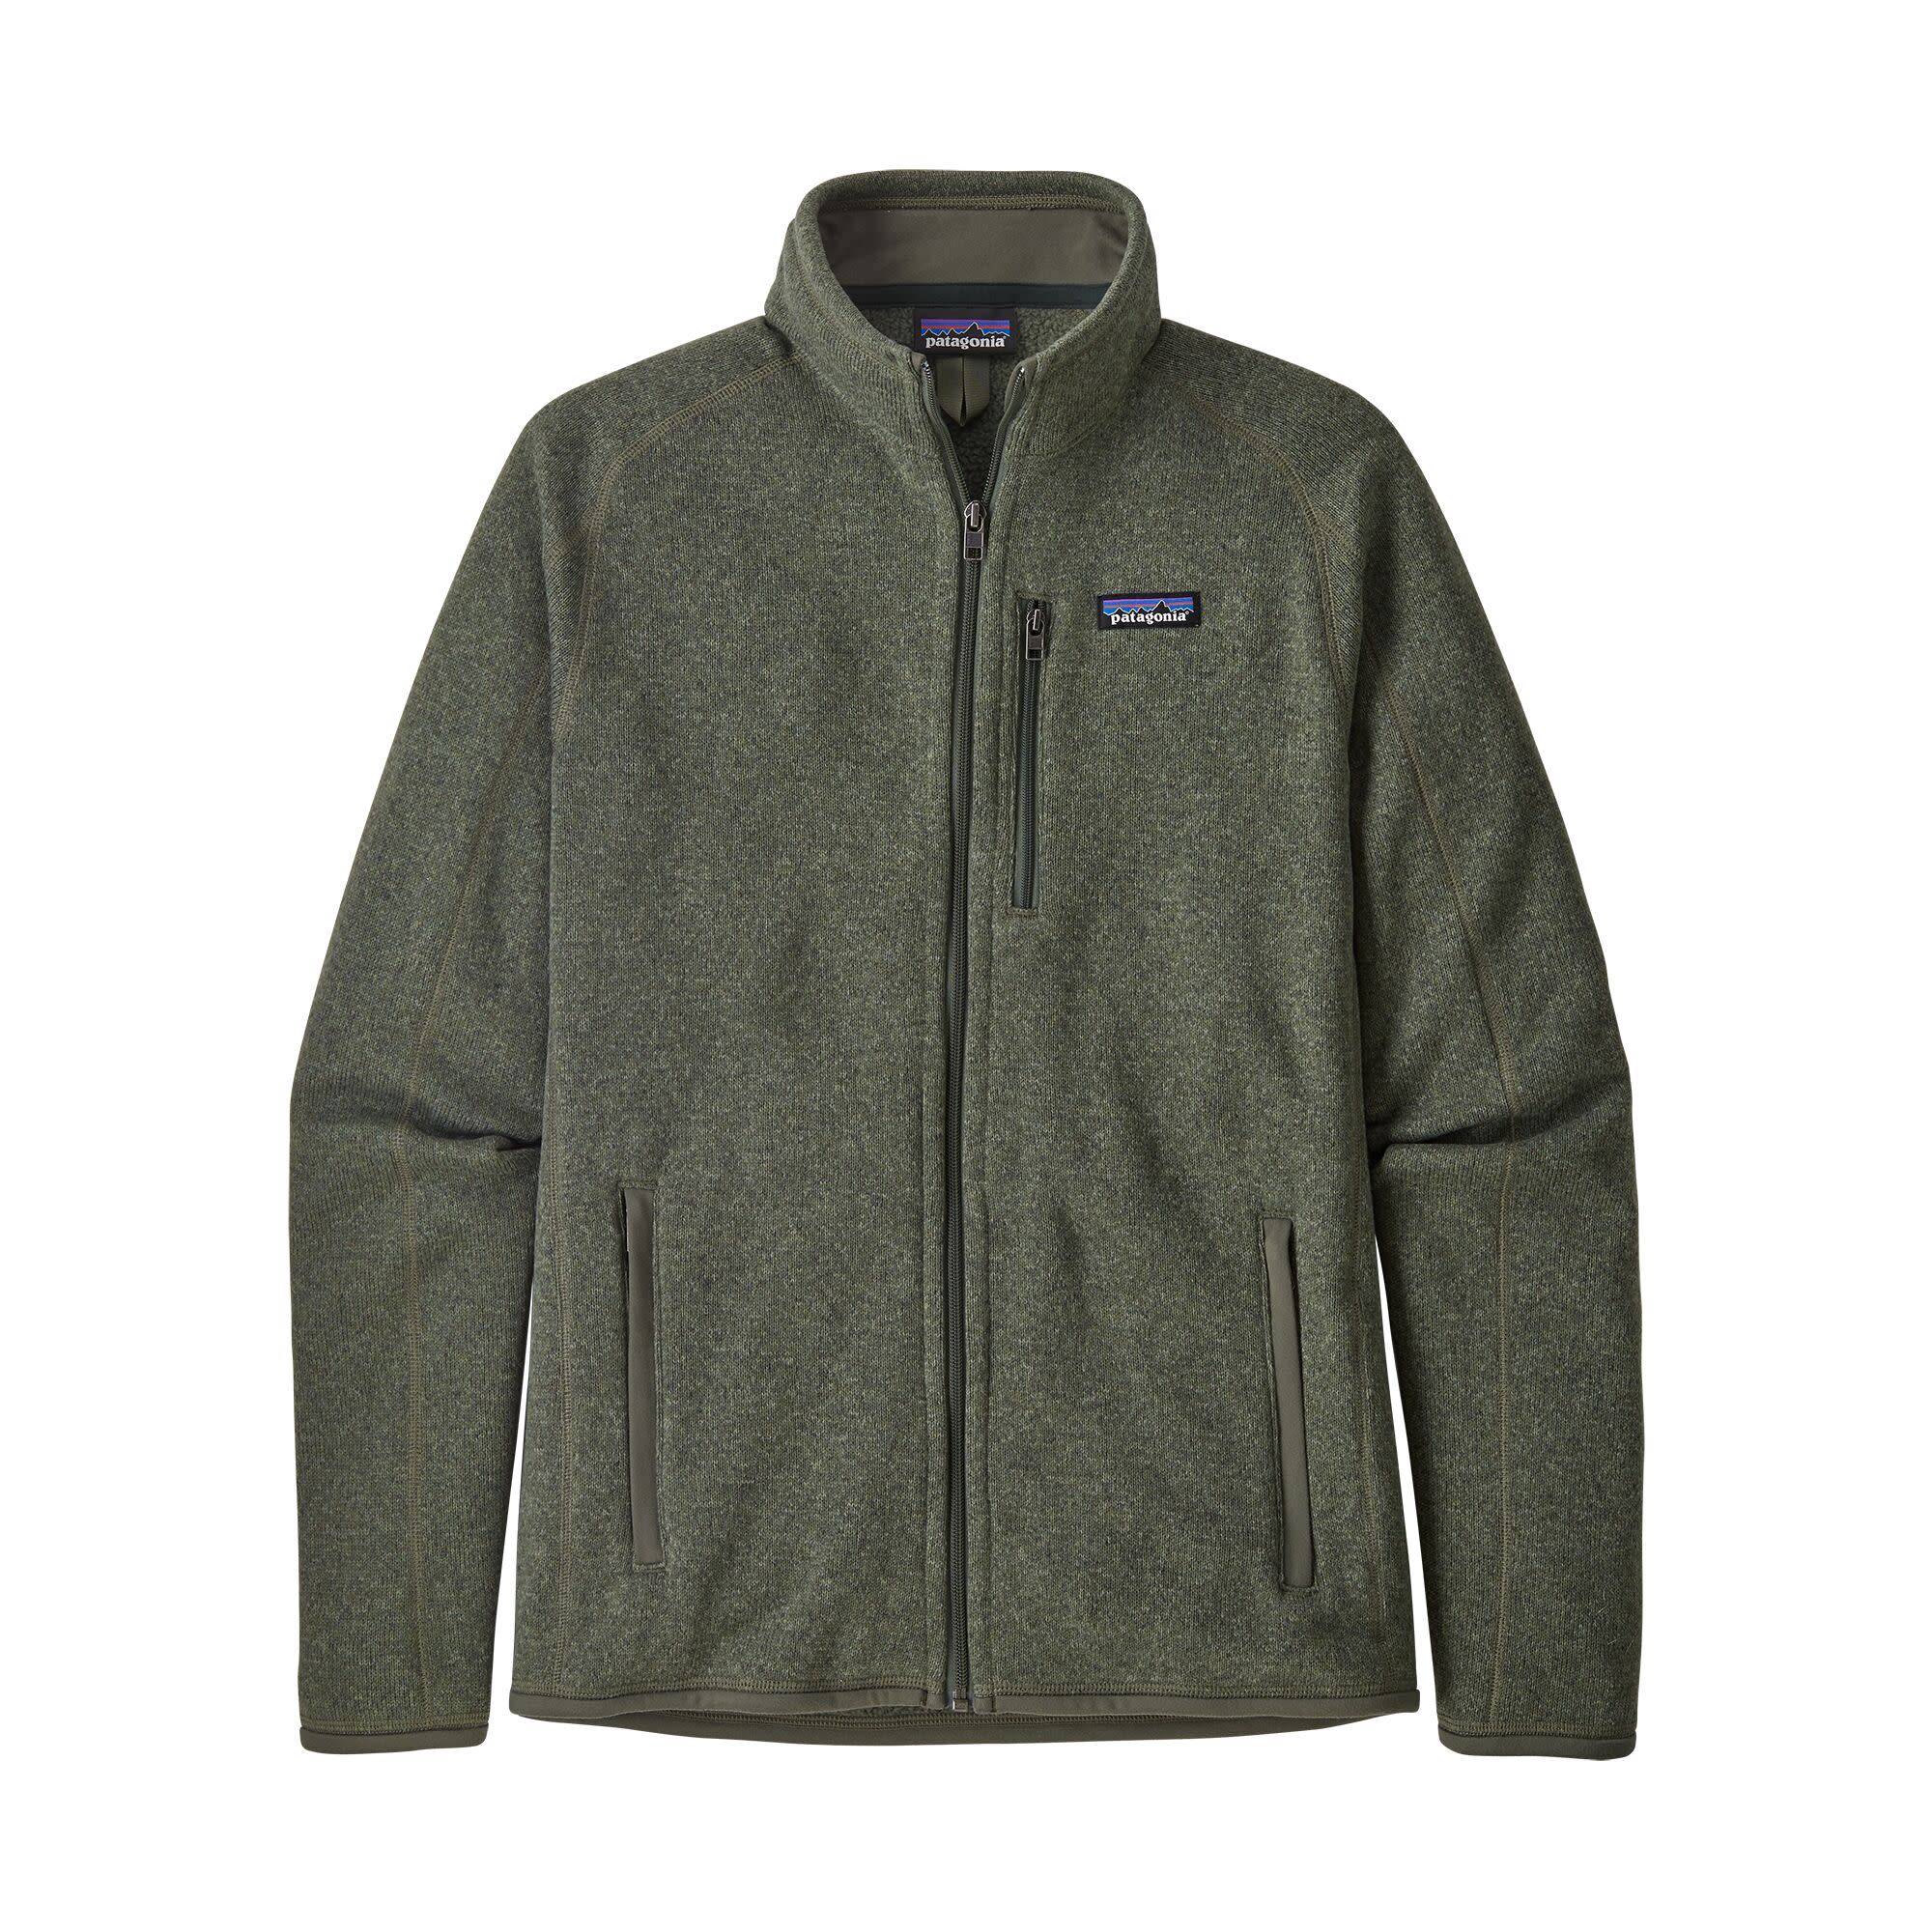 Patagonia Men’s Better Sweater Fleece Jacket Industrial Green